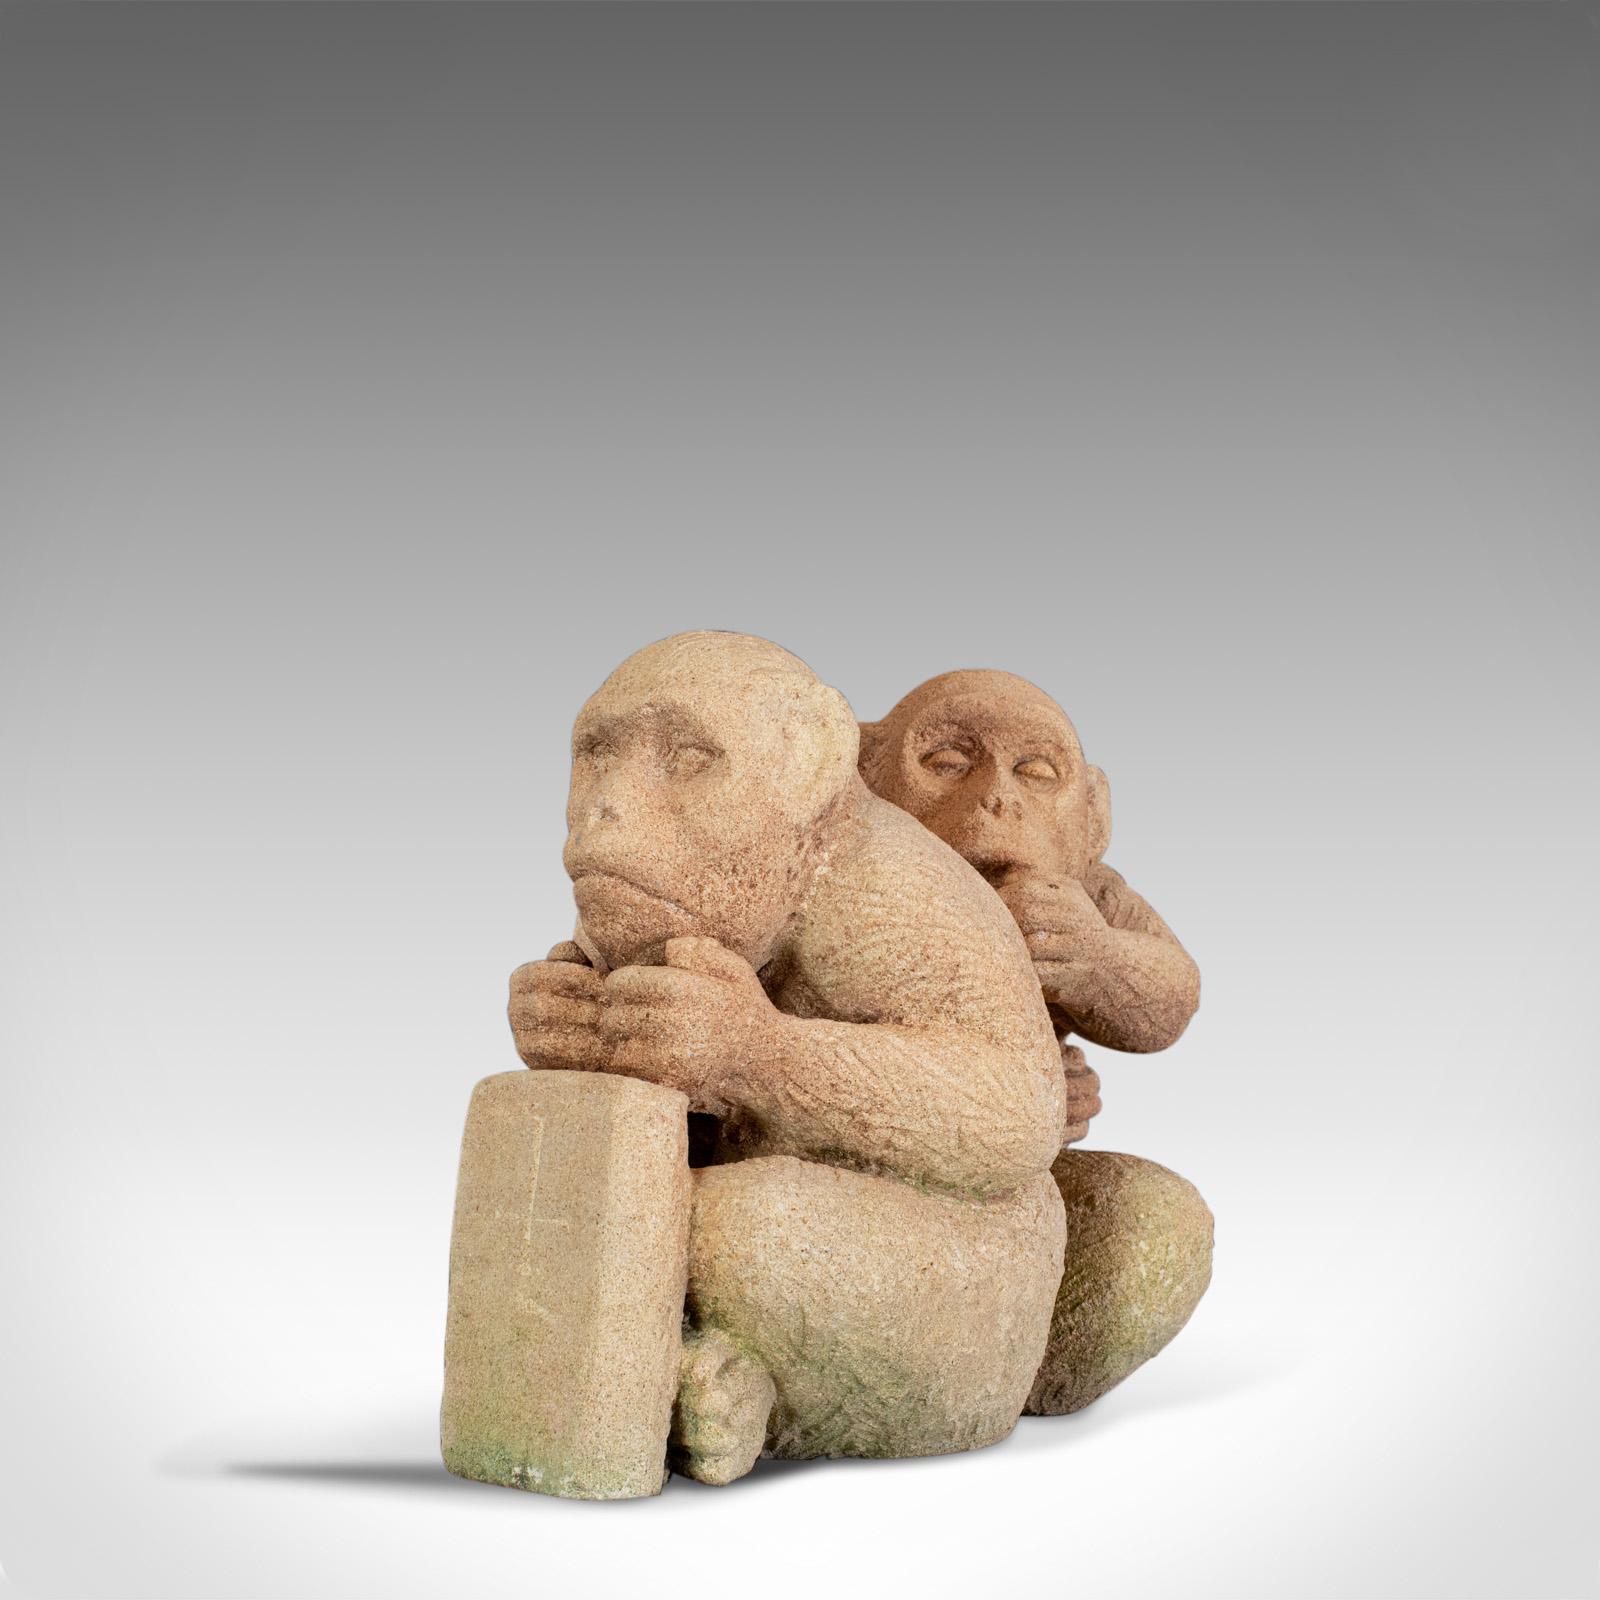 Il s'agit d'une sculpture d'un trio de macaques assis. Une pièce en pierre de bain oolithique anglaise réalisée par Dominic Hurley, artiste sculpteur renommé basé dans le Devon.

Merveilleusement sculpté dans un seul bloc de pierre de Bath dans la